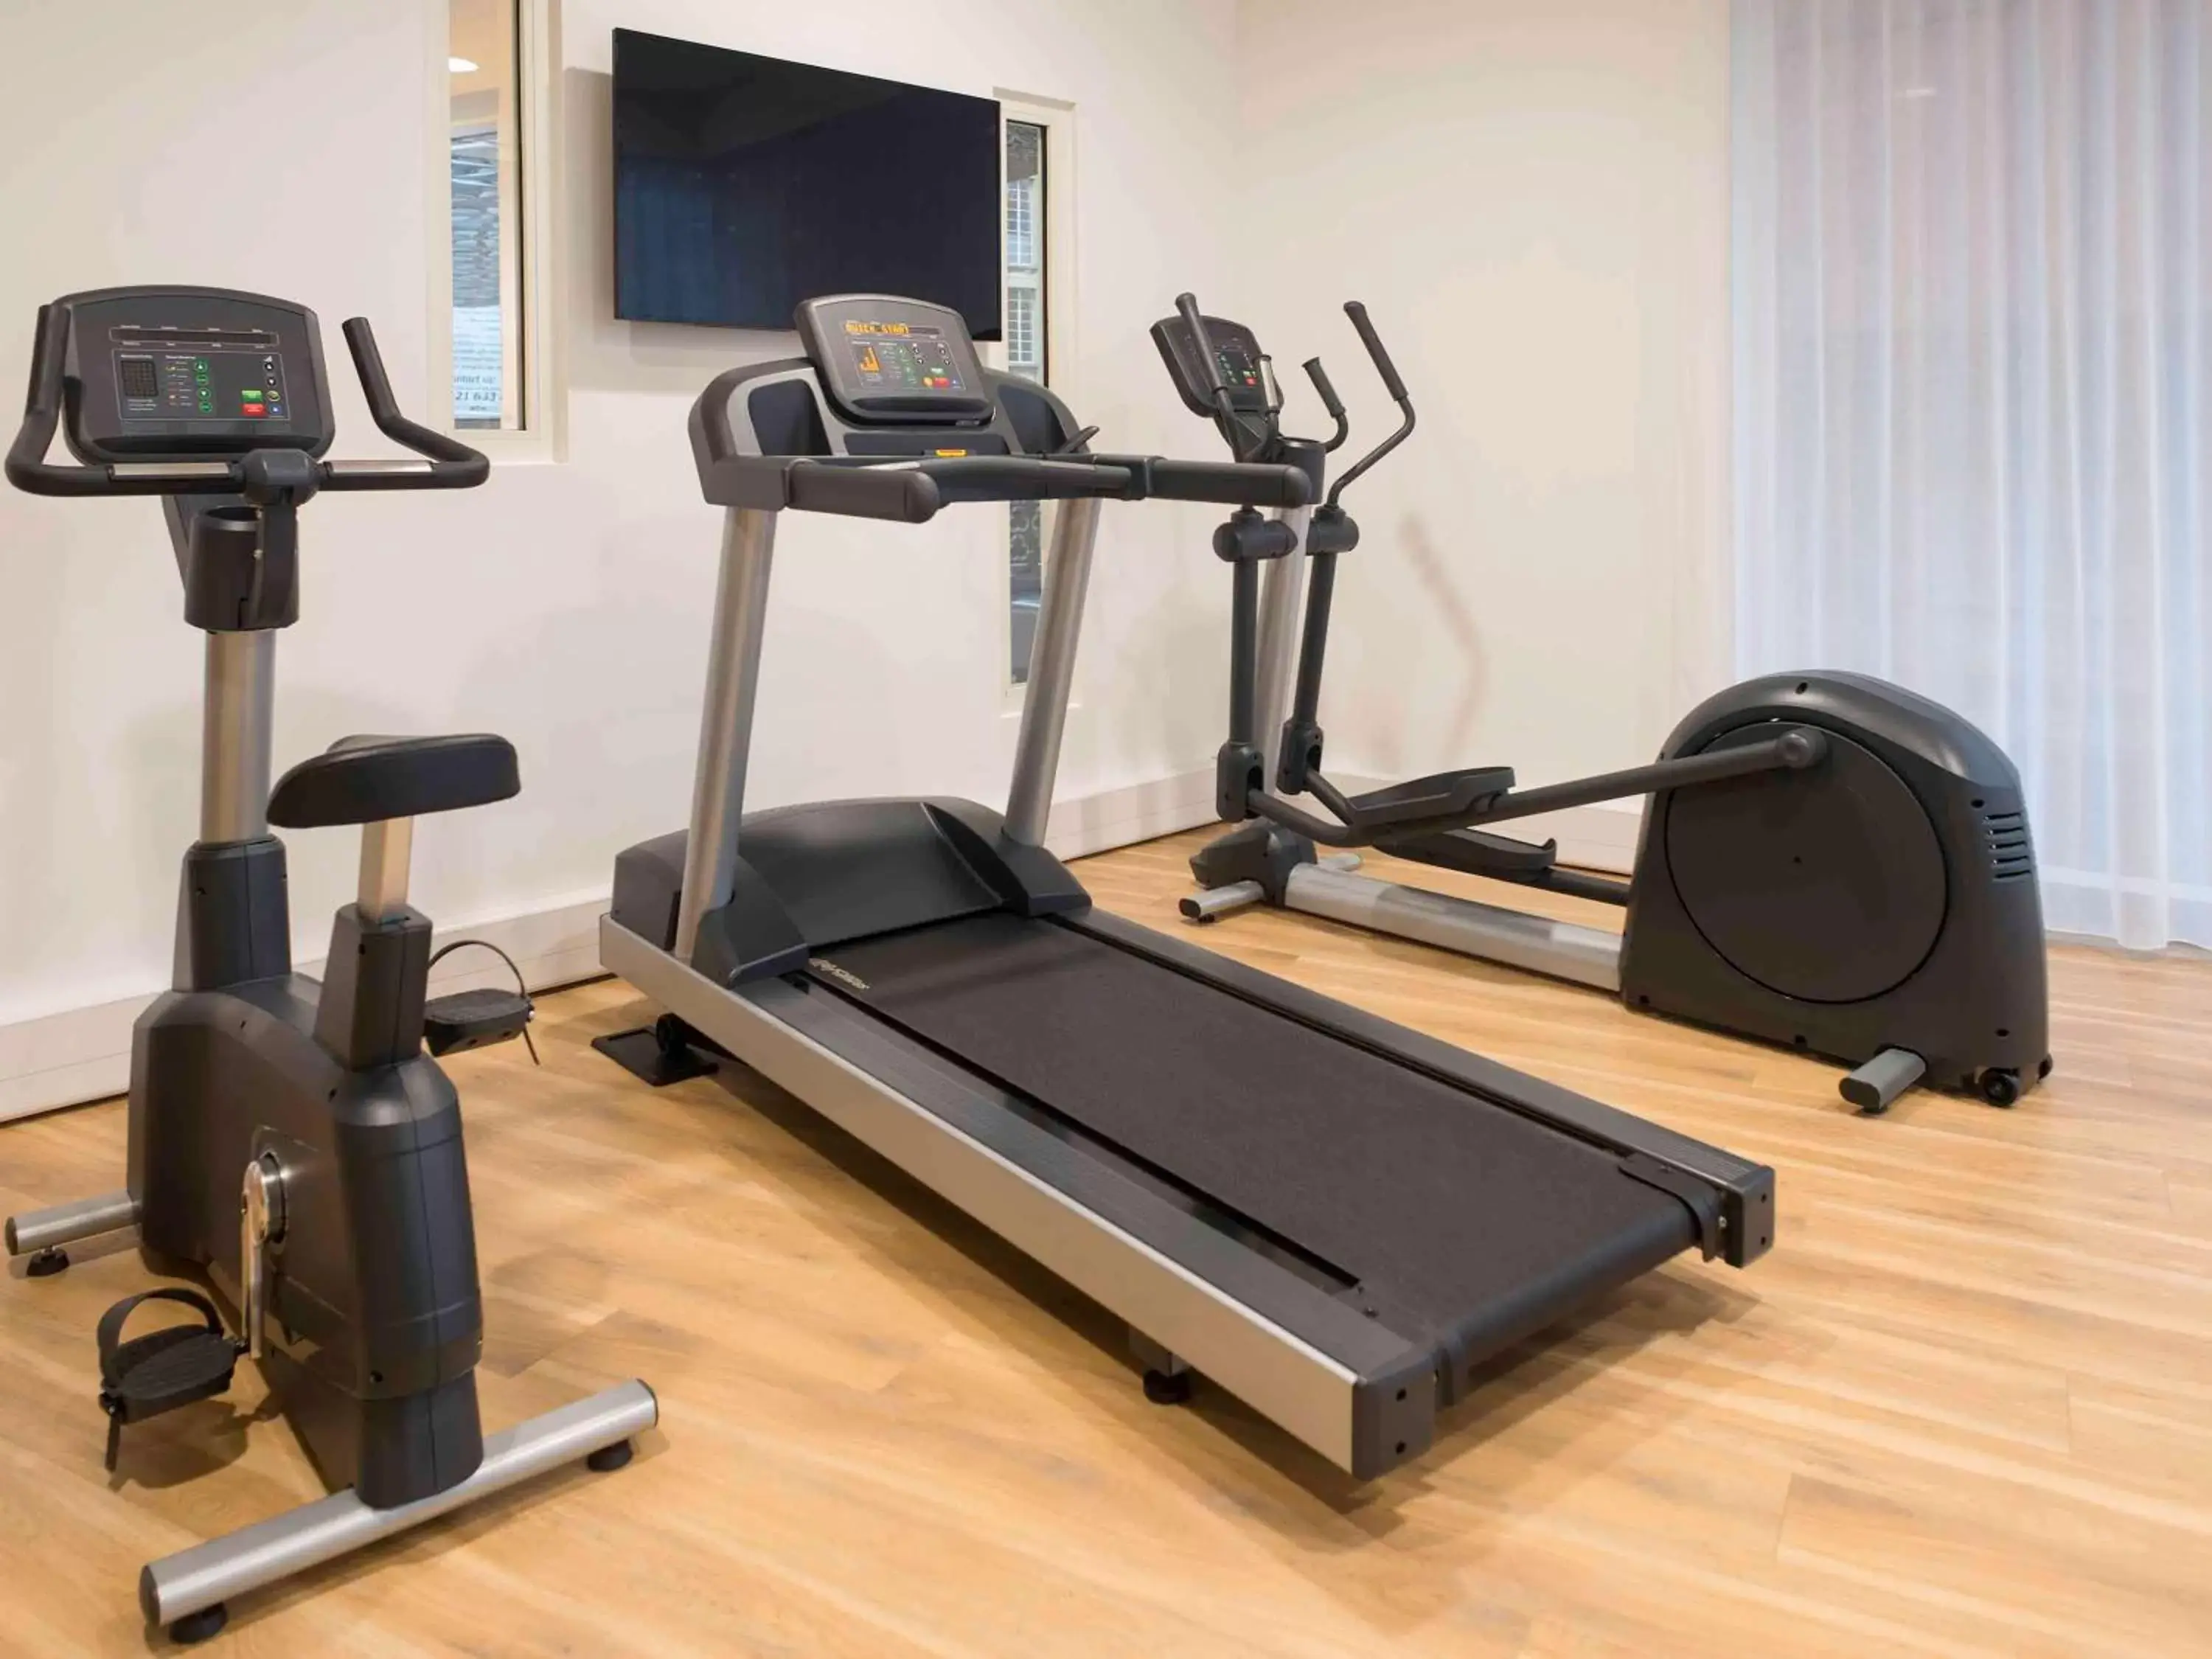 On site, Fitness Center/Facilities in Aparthotel Adagio Birmingham City Centre